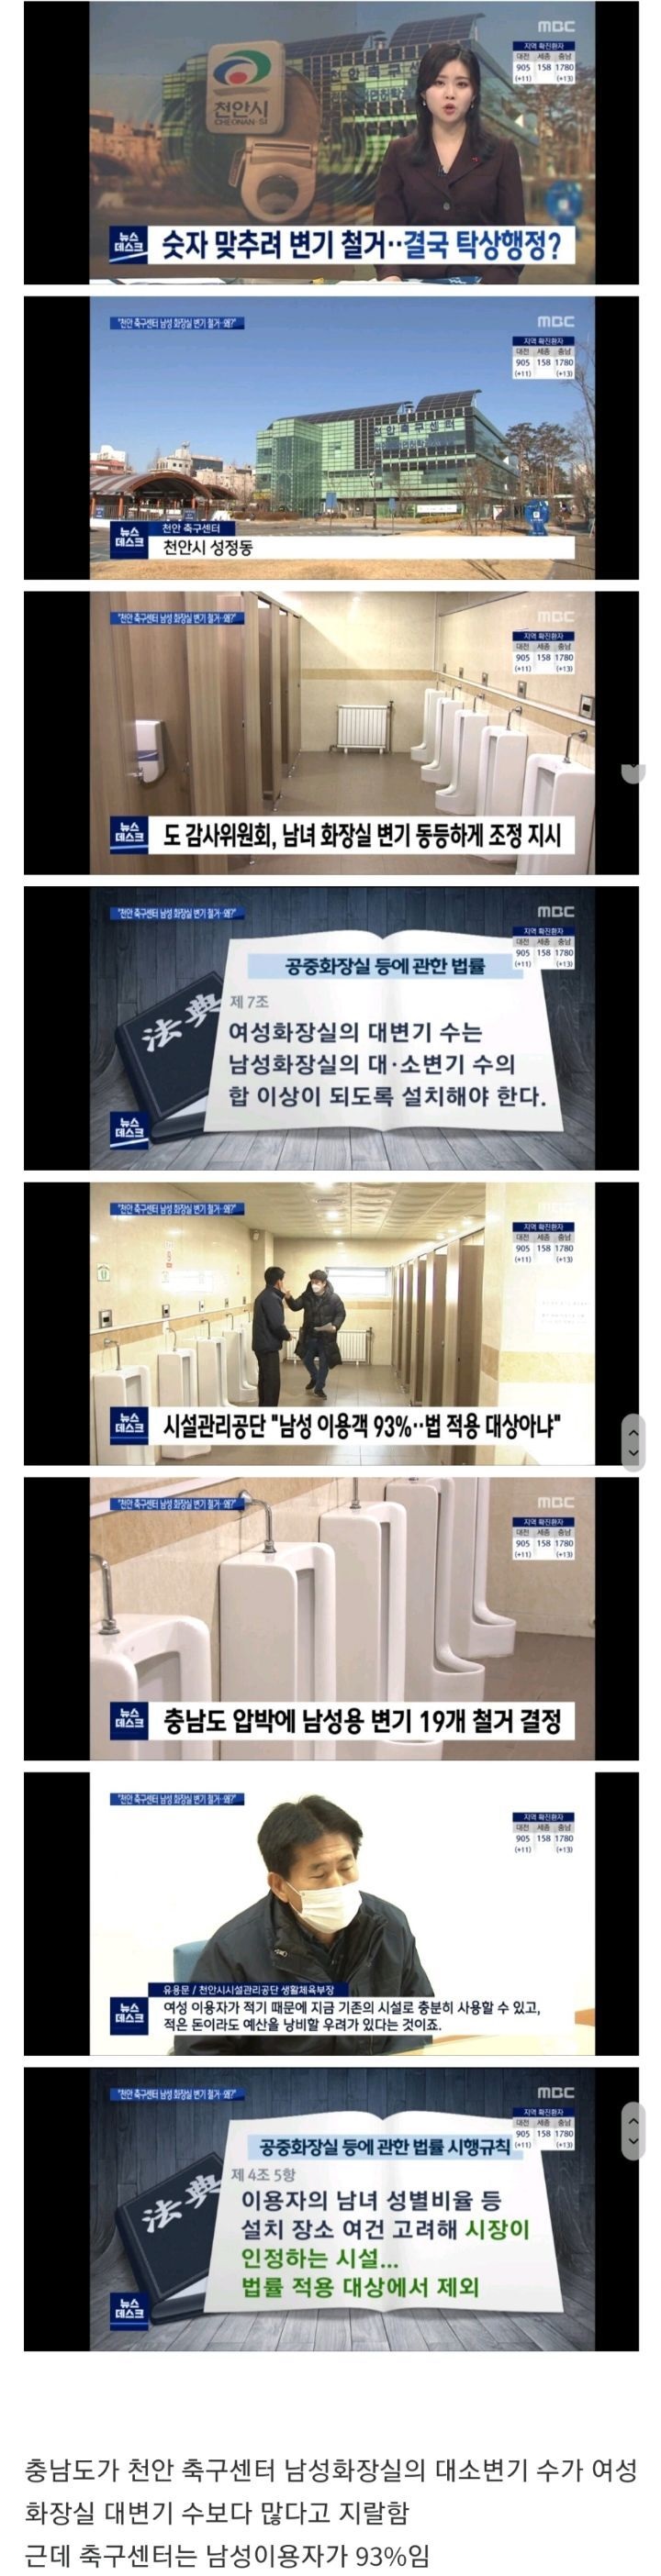 천안시가 남자화장실 변기를 철거하는 이유.JPG